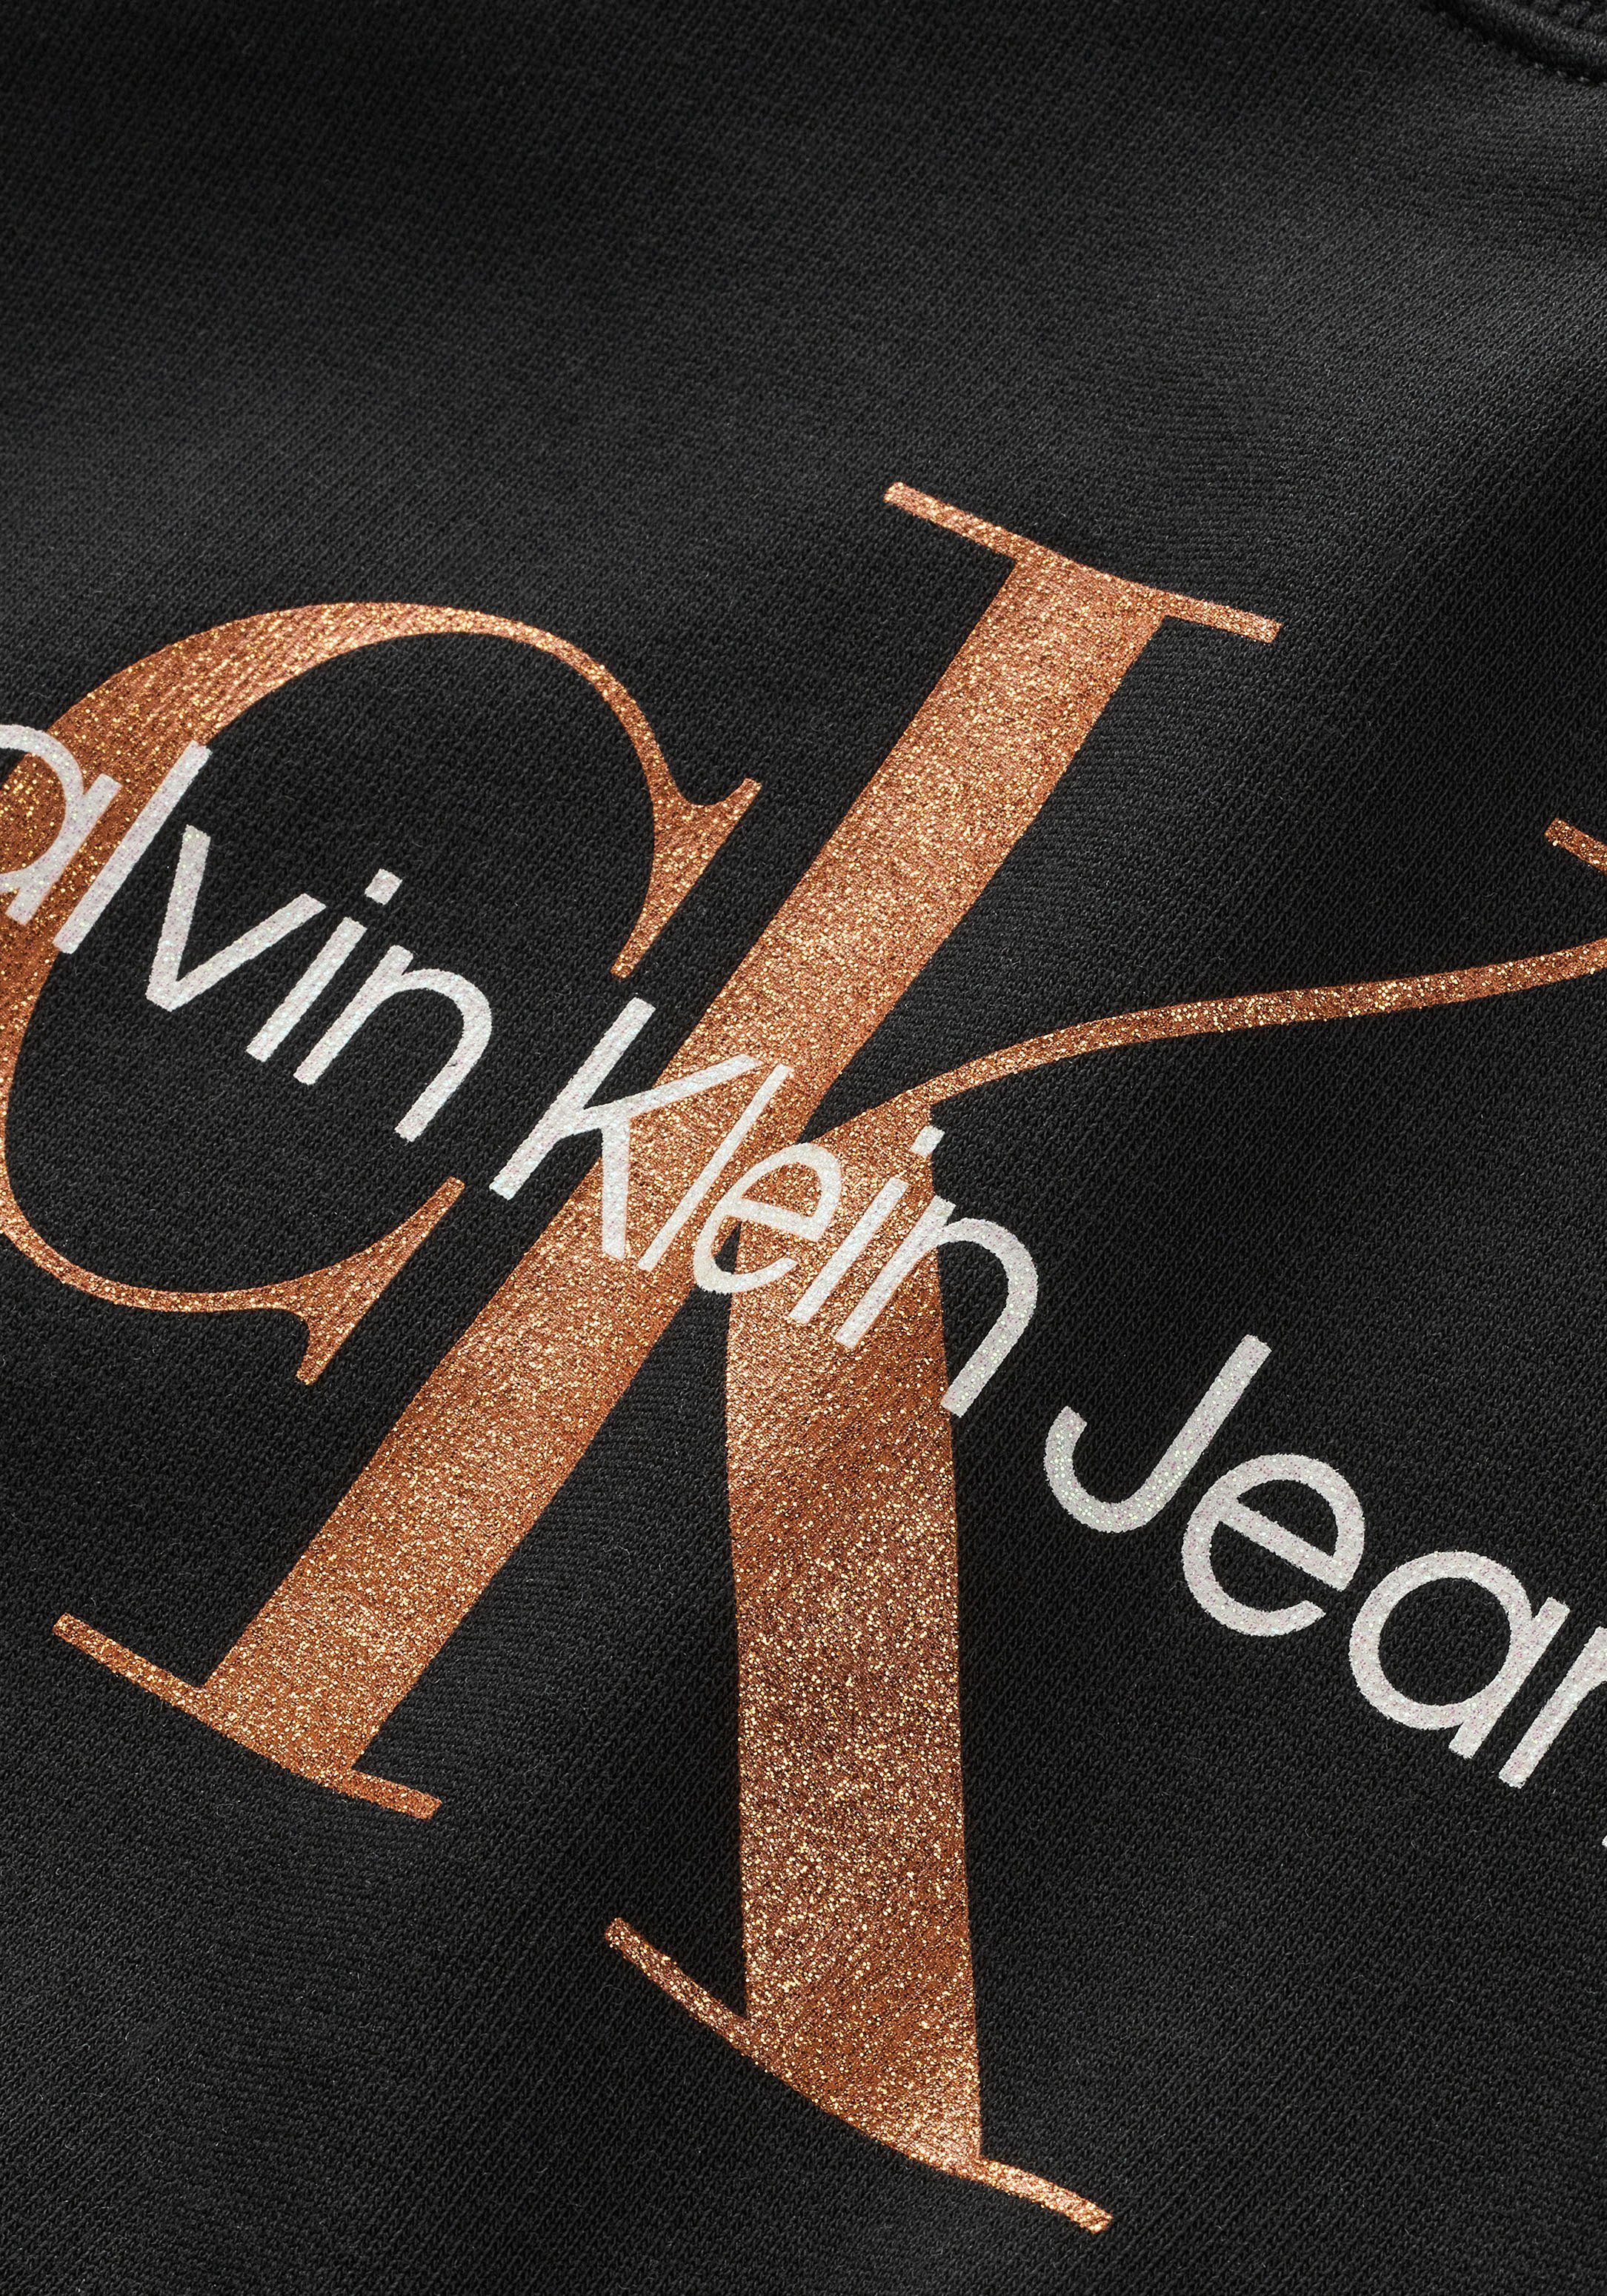 Calvin Jeans Sweatshirt BRONZE MONOGRAM Klein SWEATSHIRT CN